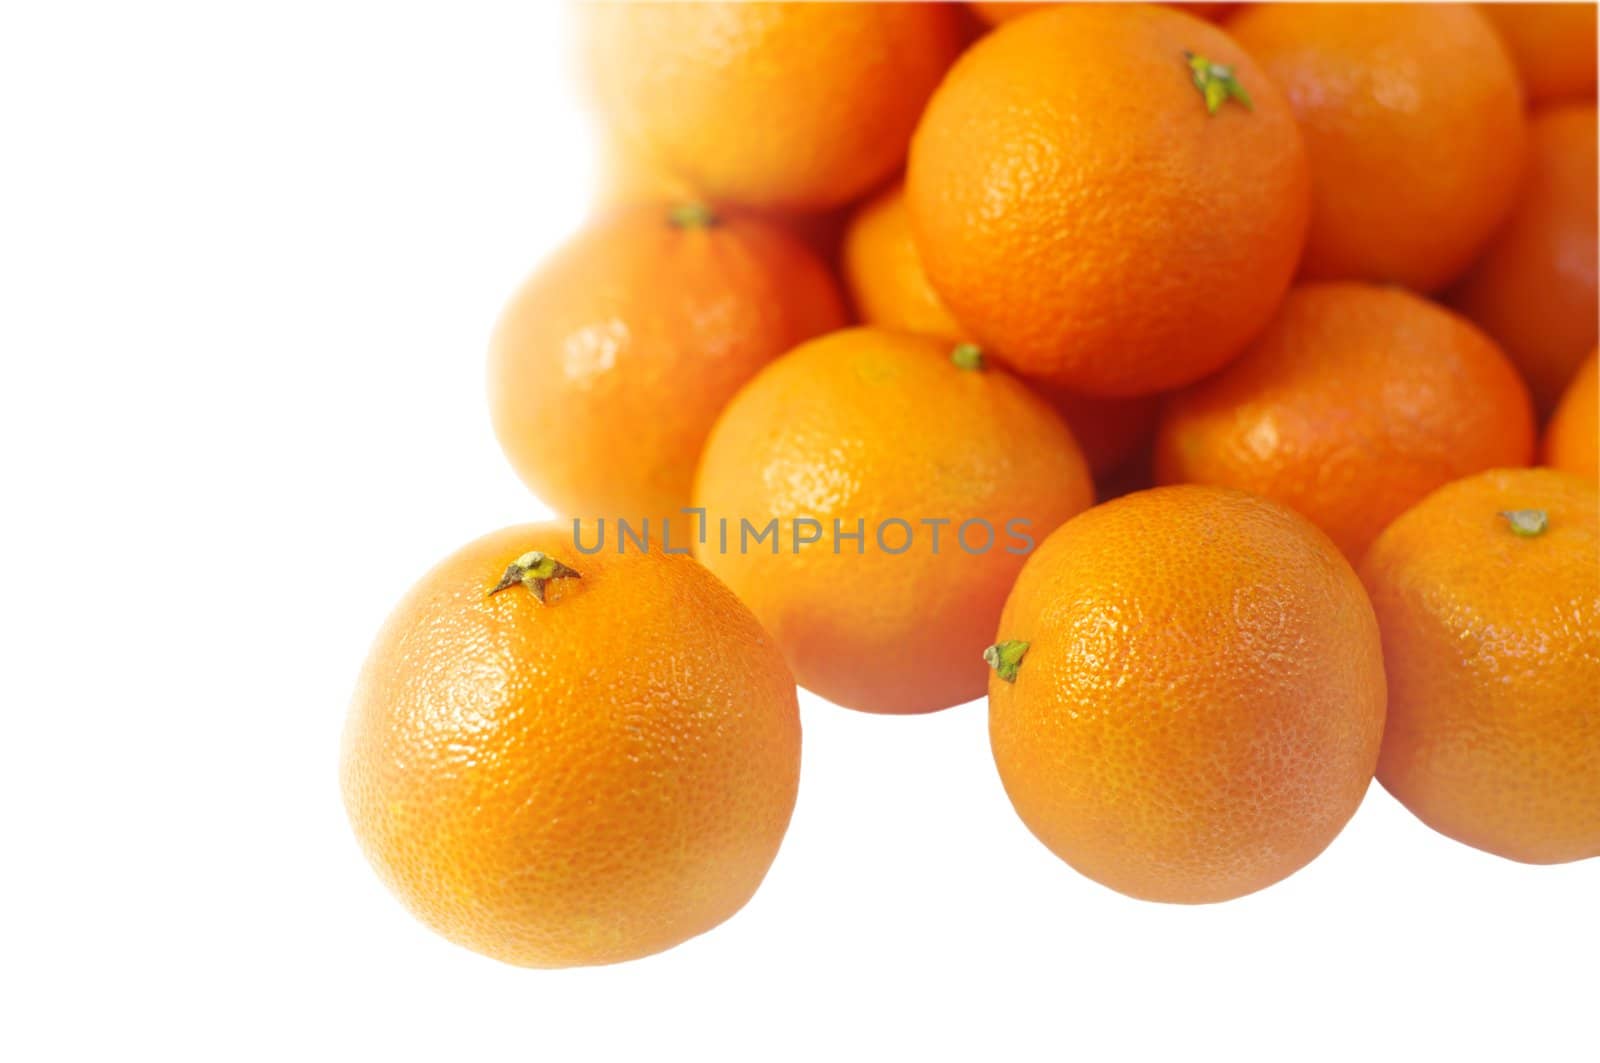  mandarins  by HGalina